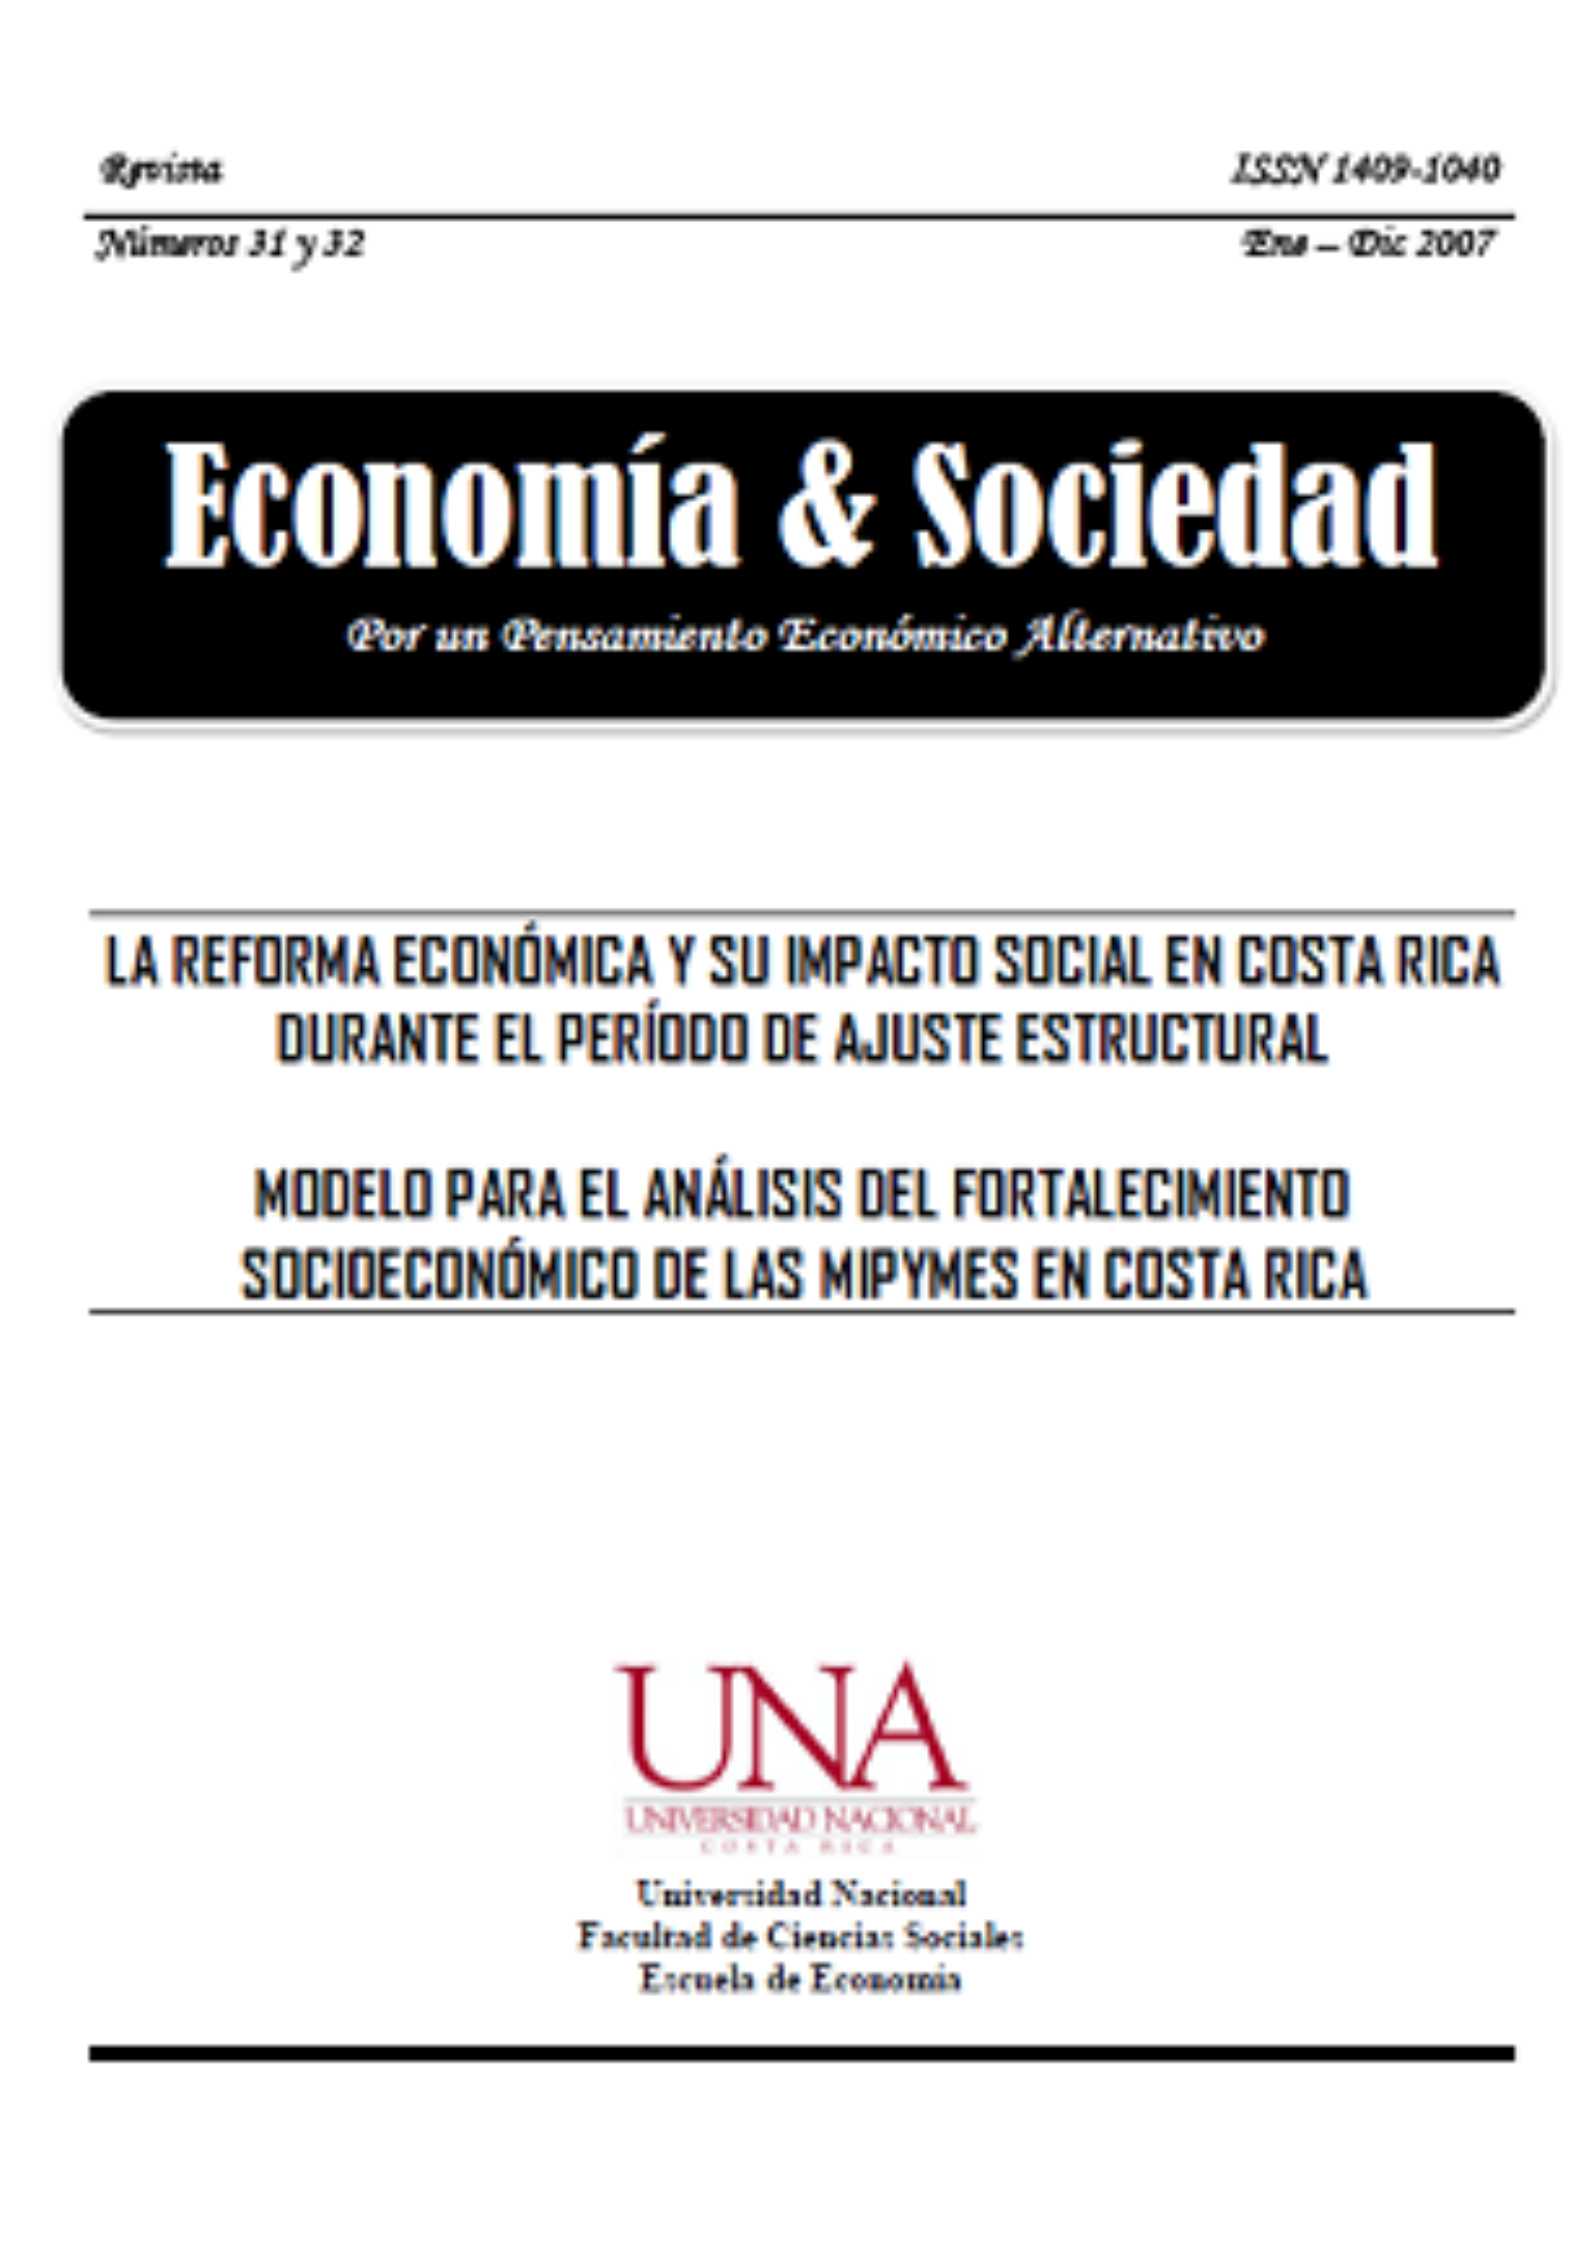 Modelo para el análisis del fortalecimiento socioeconómico de las MIPYMES  en Costa Rica